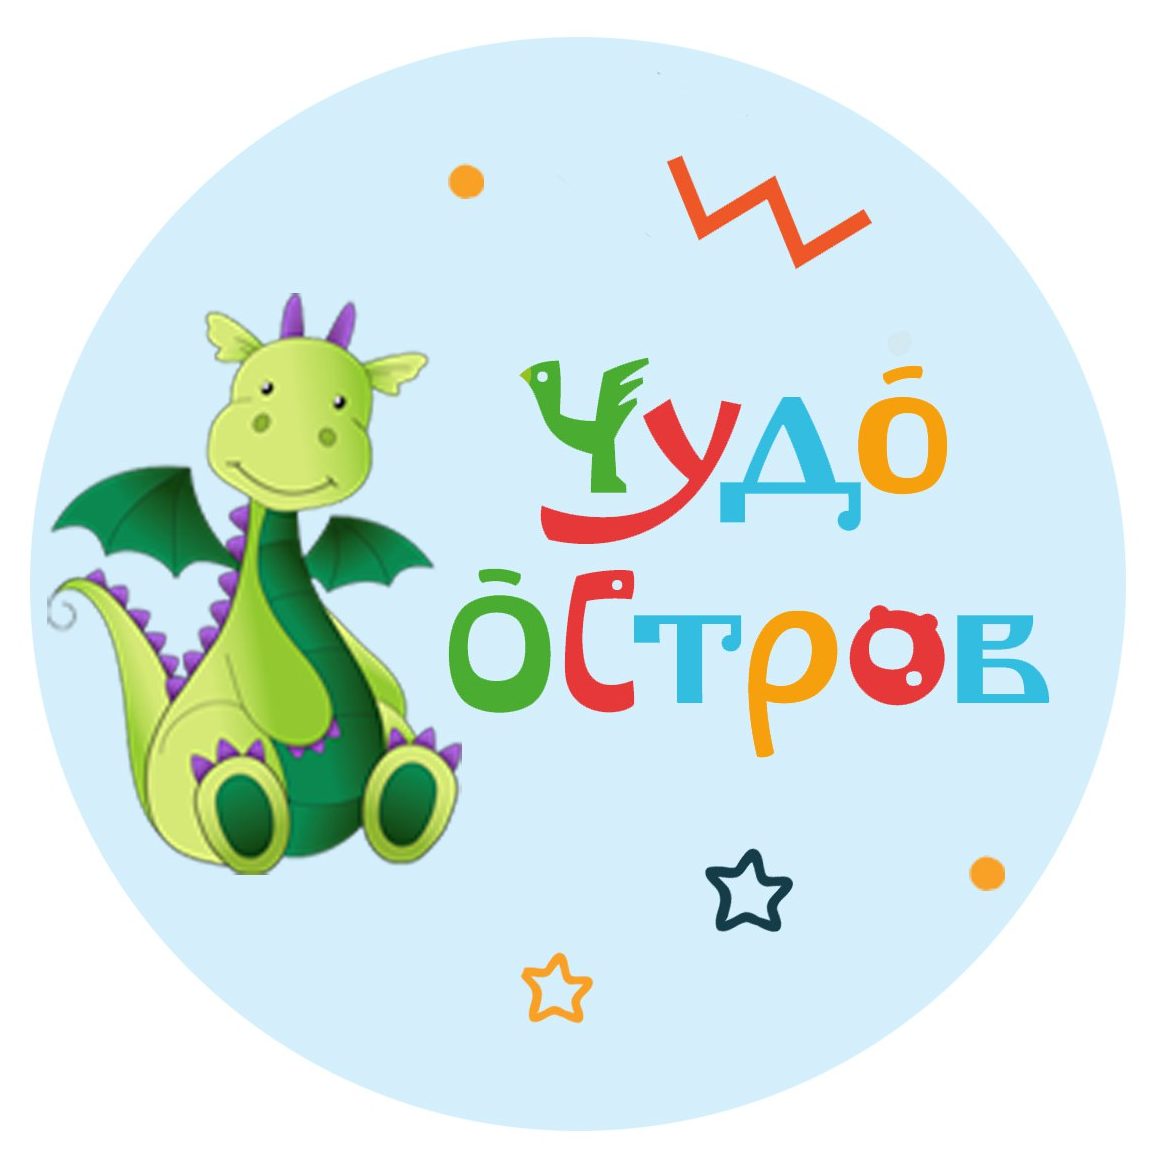 Логотип чудо остров Великий Новгород